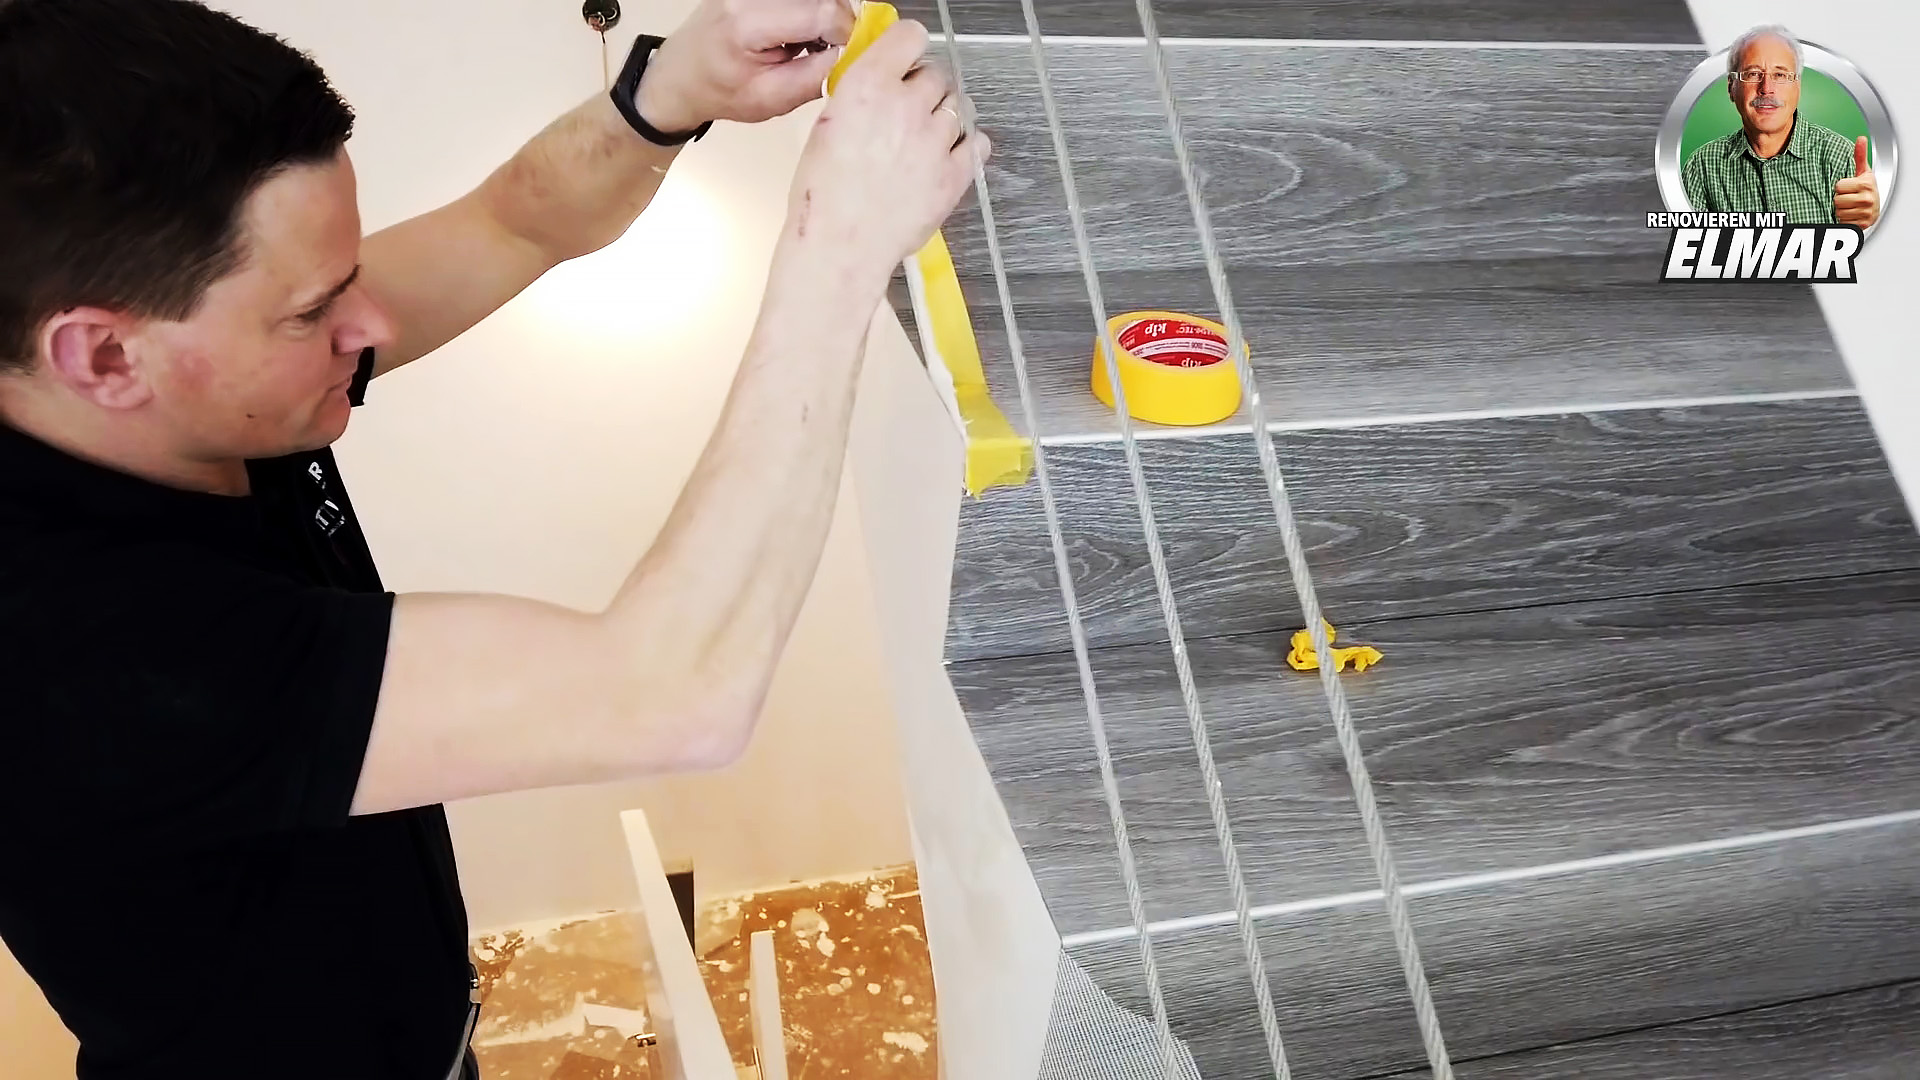 Как красиво отделать деревянную лестницу виниловой плиткой